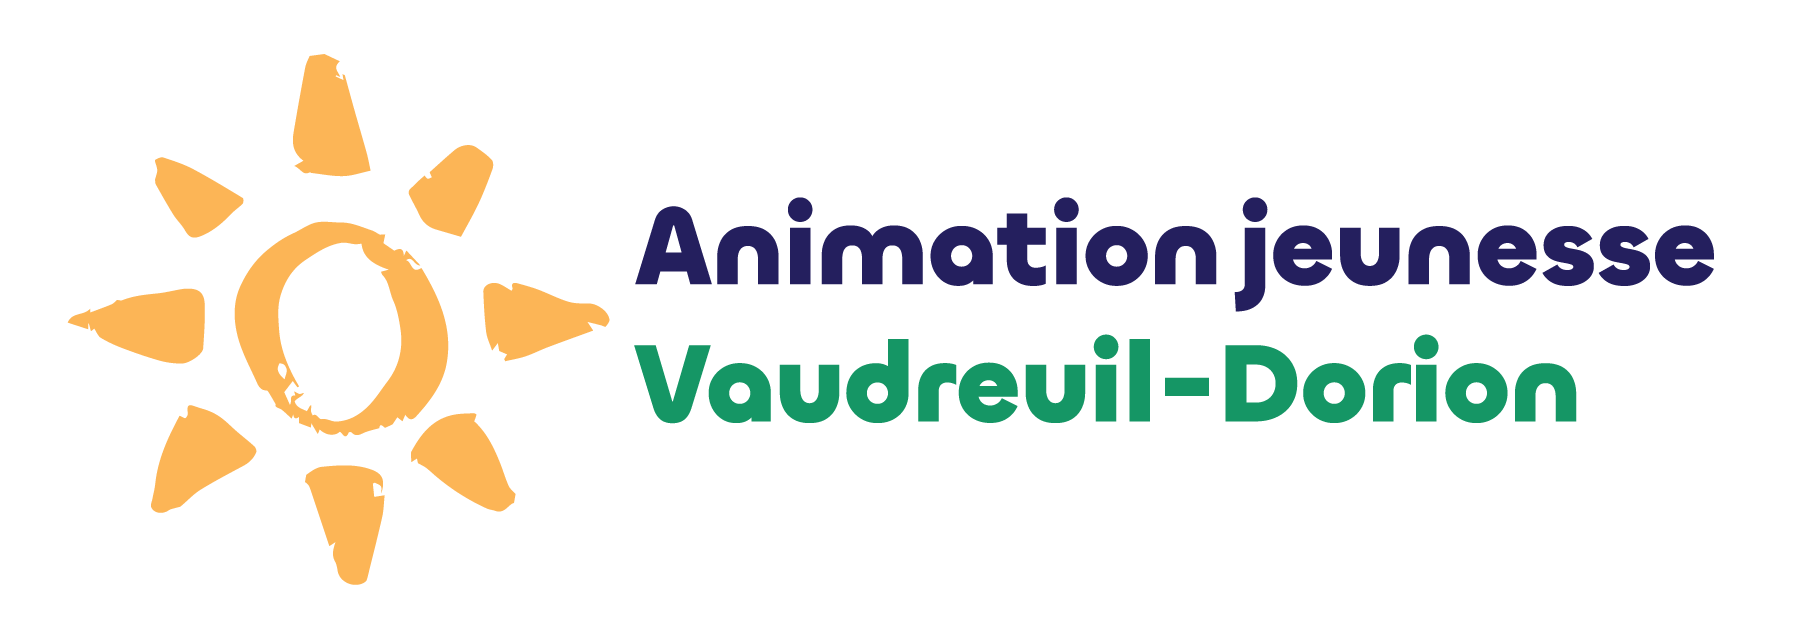 Vaudreuil-Dorion  - Animation Jeunesse Vaudreuil-Dorion